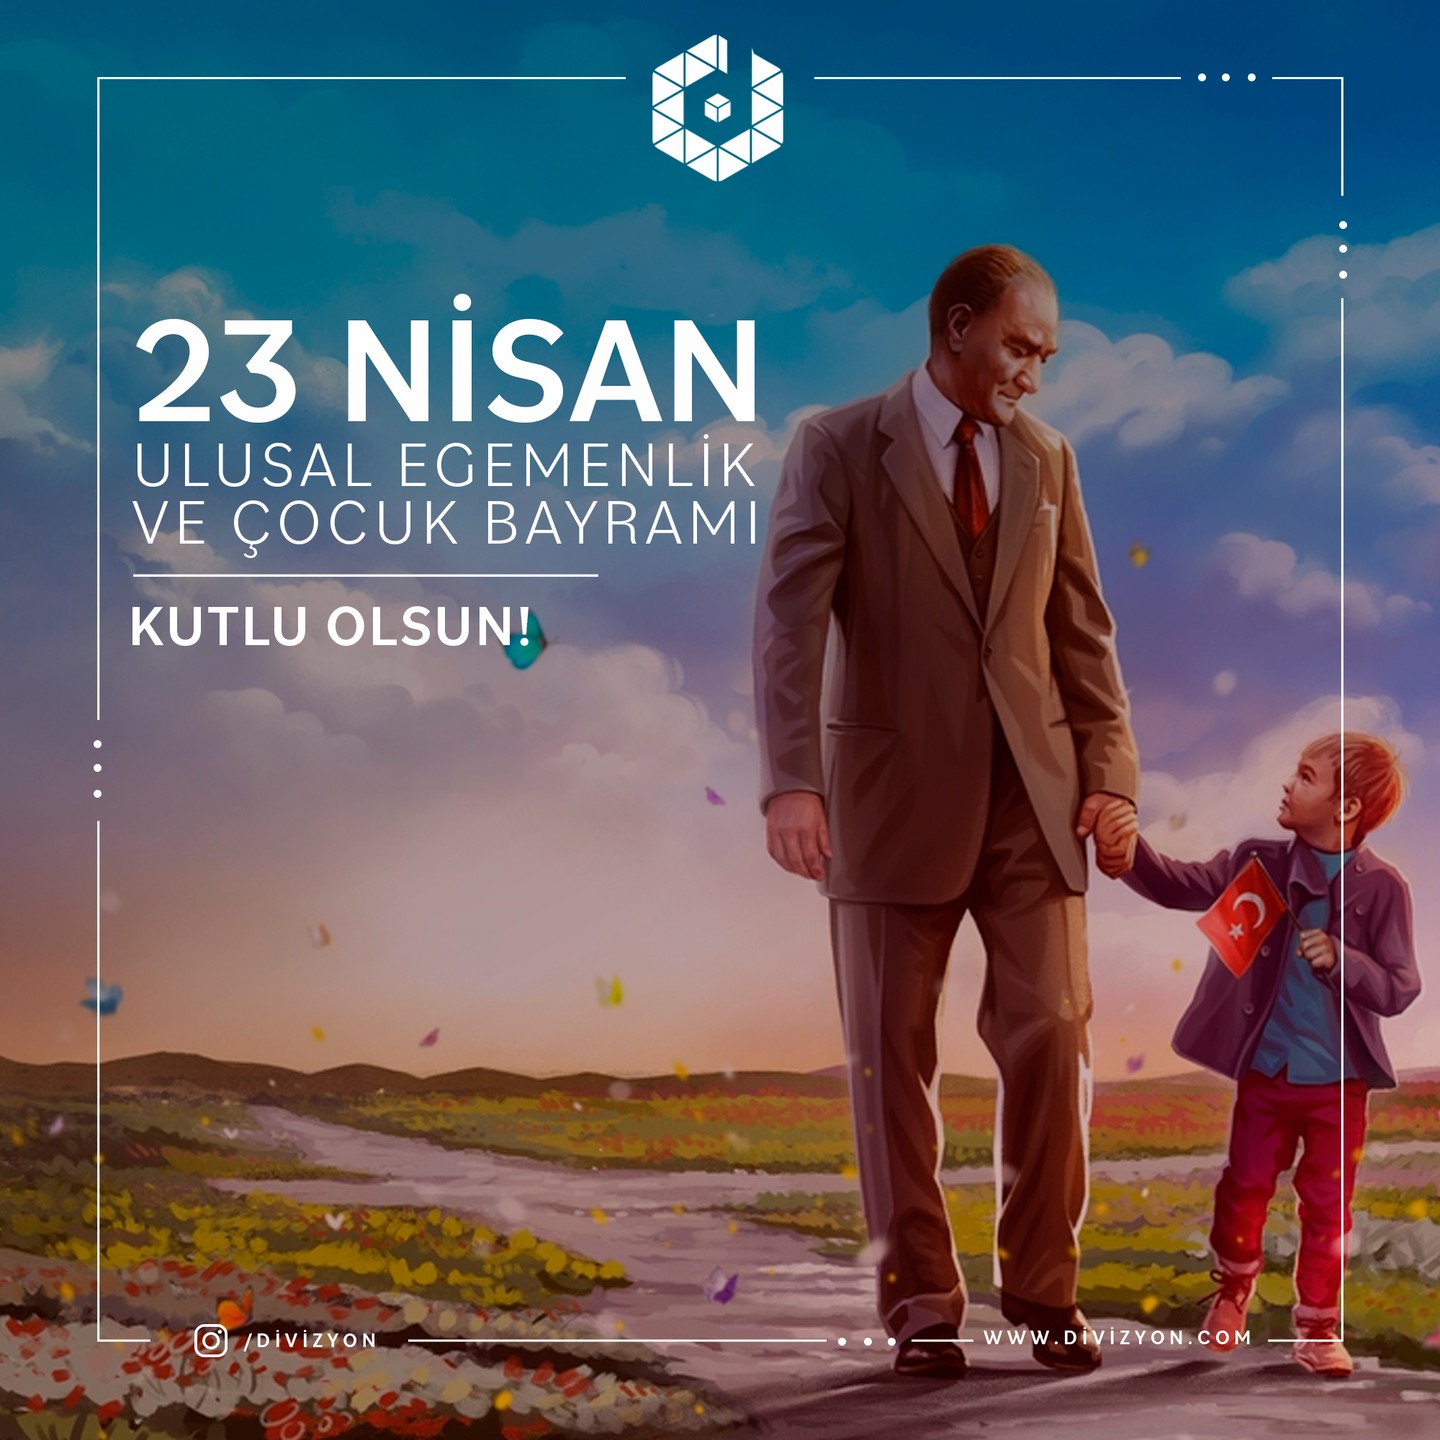 23 Nisan Ulusal Egemenlik ve Çocuk Bayramınız Kutlu Olsun! #23nisan #ulusalegemenlik